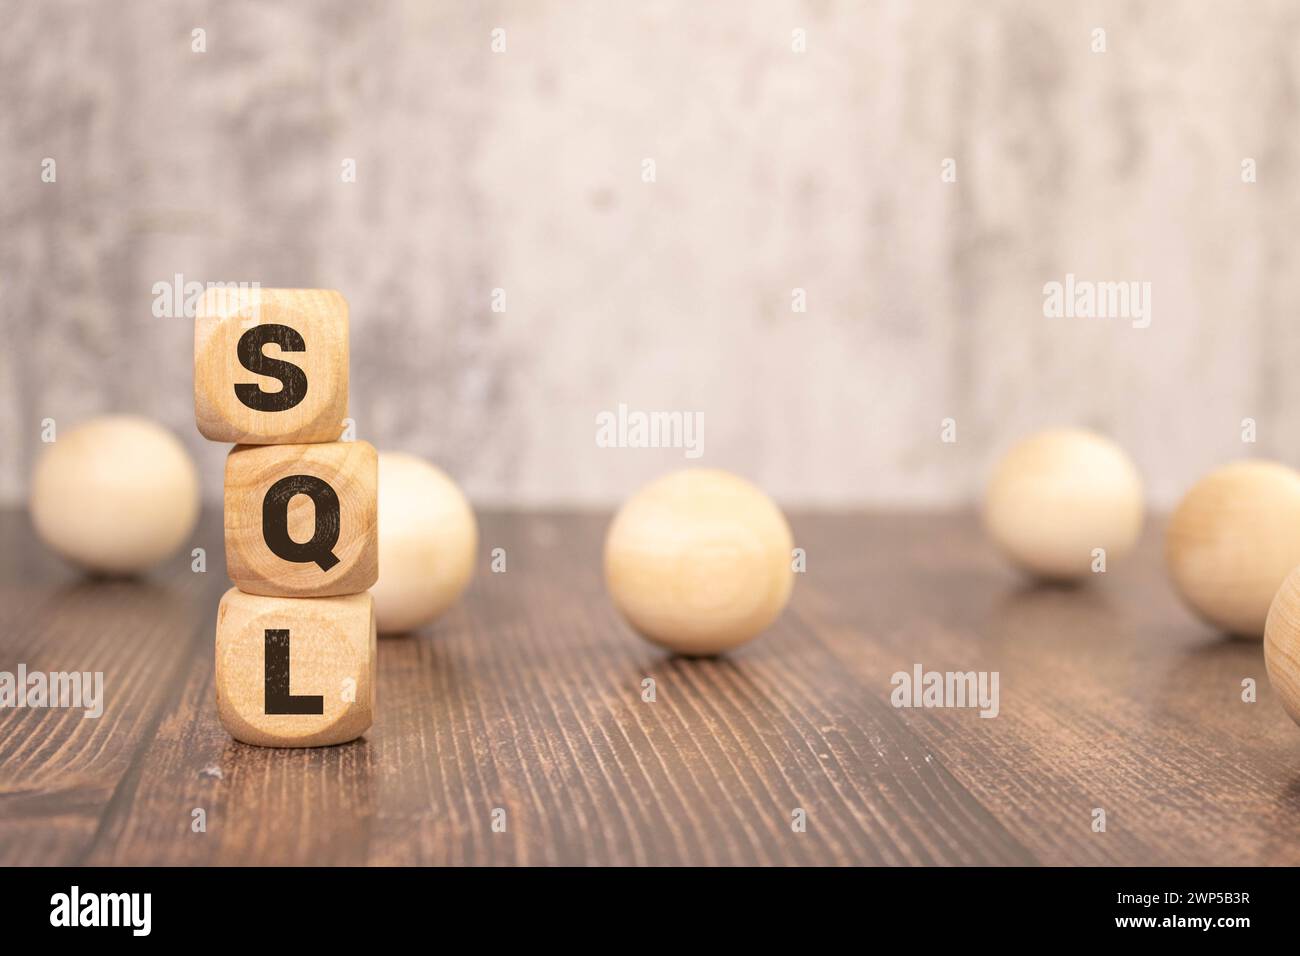 Les cubes en bois sur fond marron avec le texte « SQL » représentent le concept de « Sales Qualified Lead ». Il visualise le processus de filtrage identif Banque D'Images